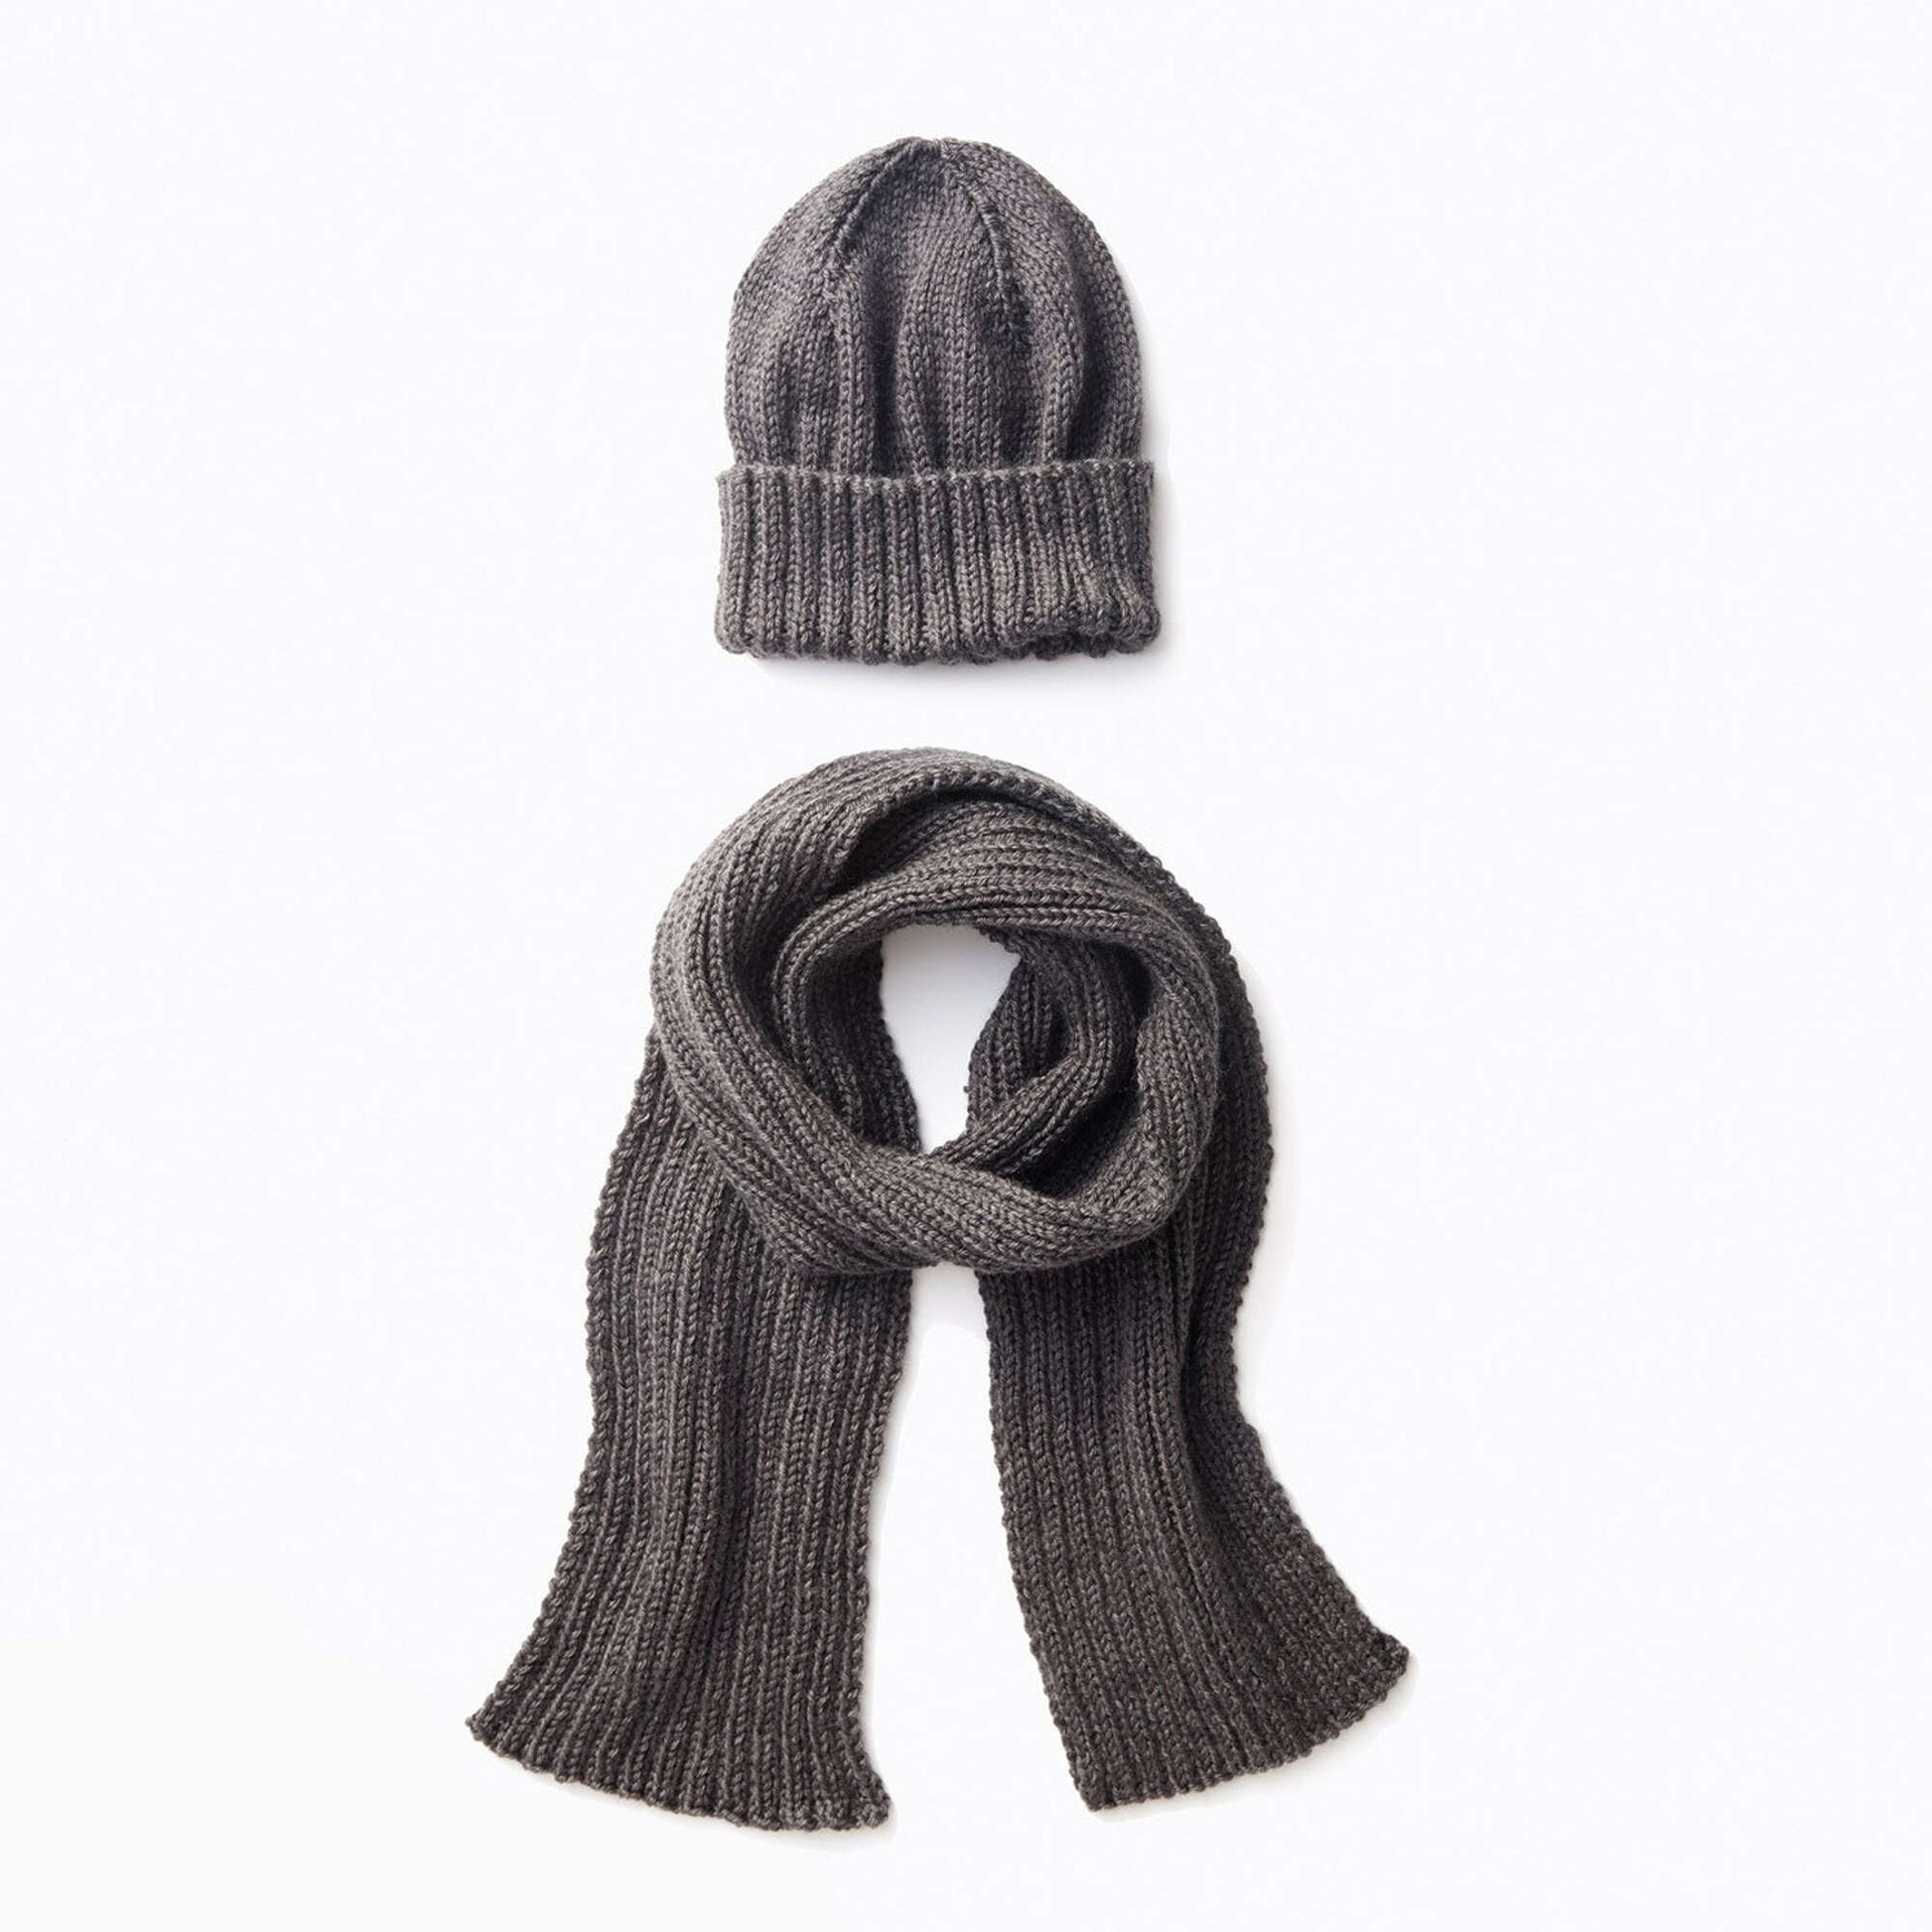 Free Caron Men's Basic Hat and Scarf Knit Set Pattern